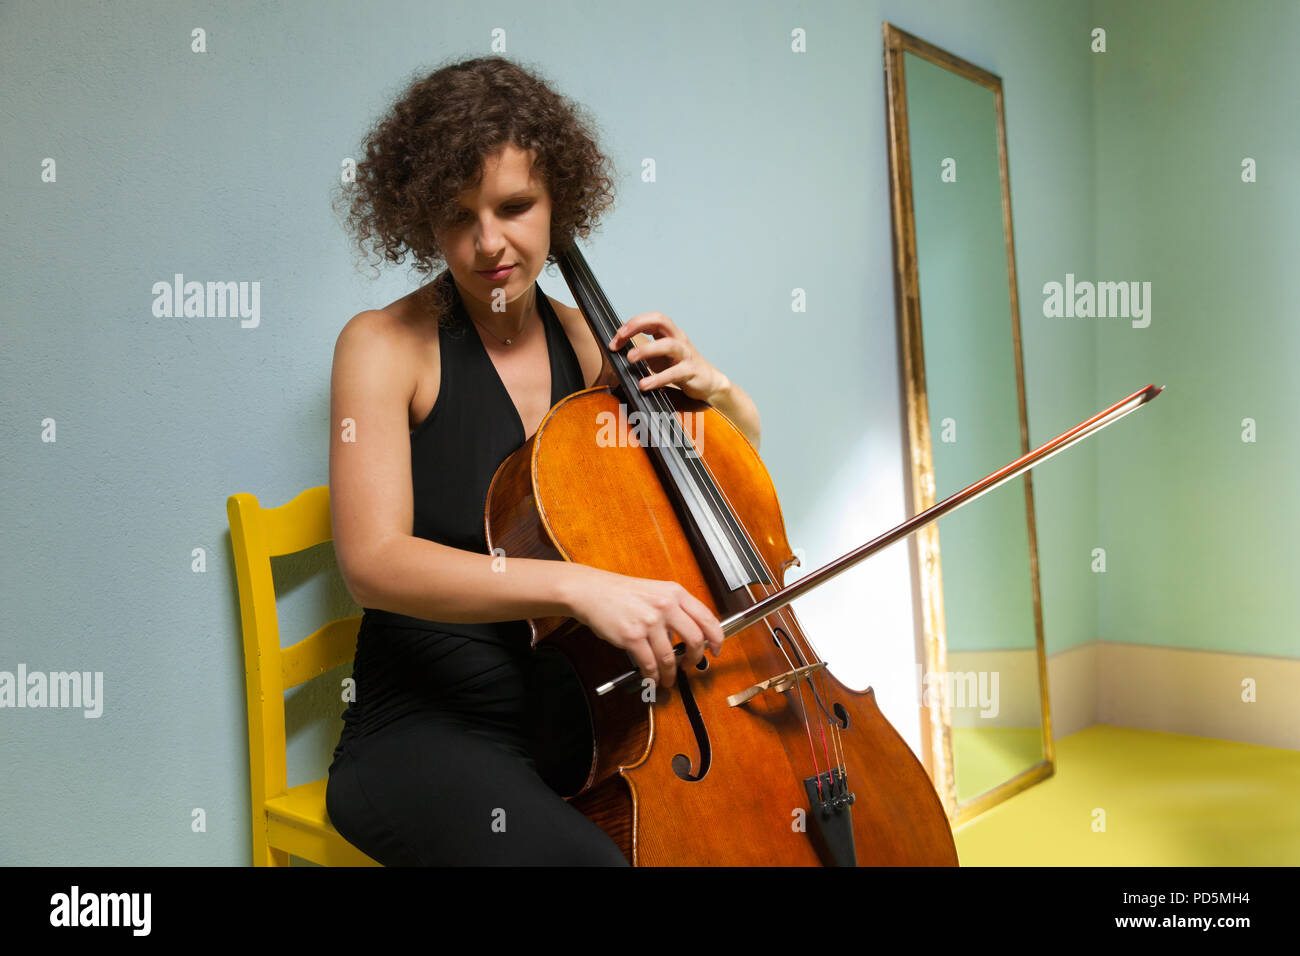 Junge Madchen Cello Spielen In Einem Zimmer Stockfotografie Alamy